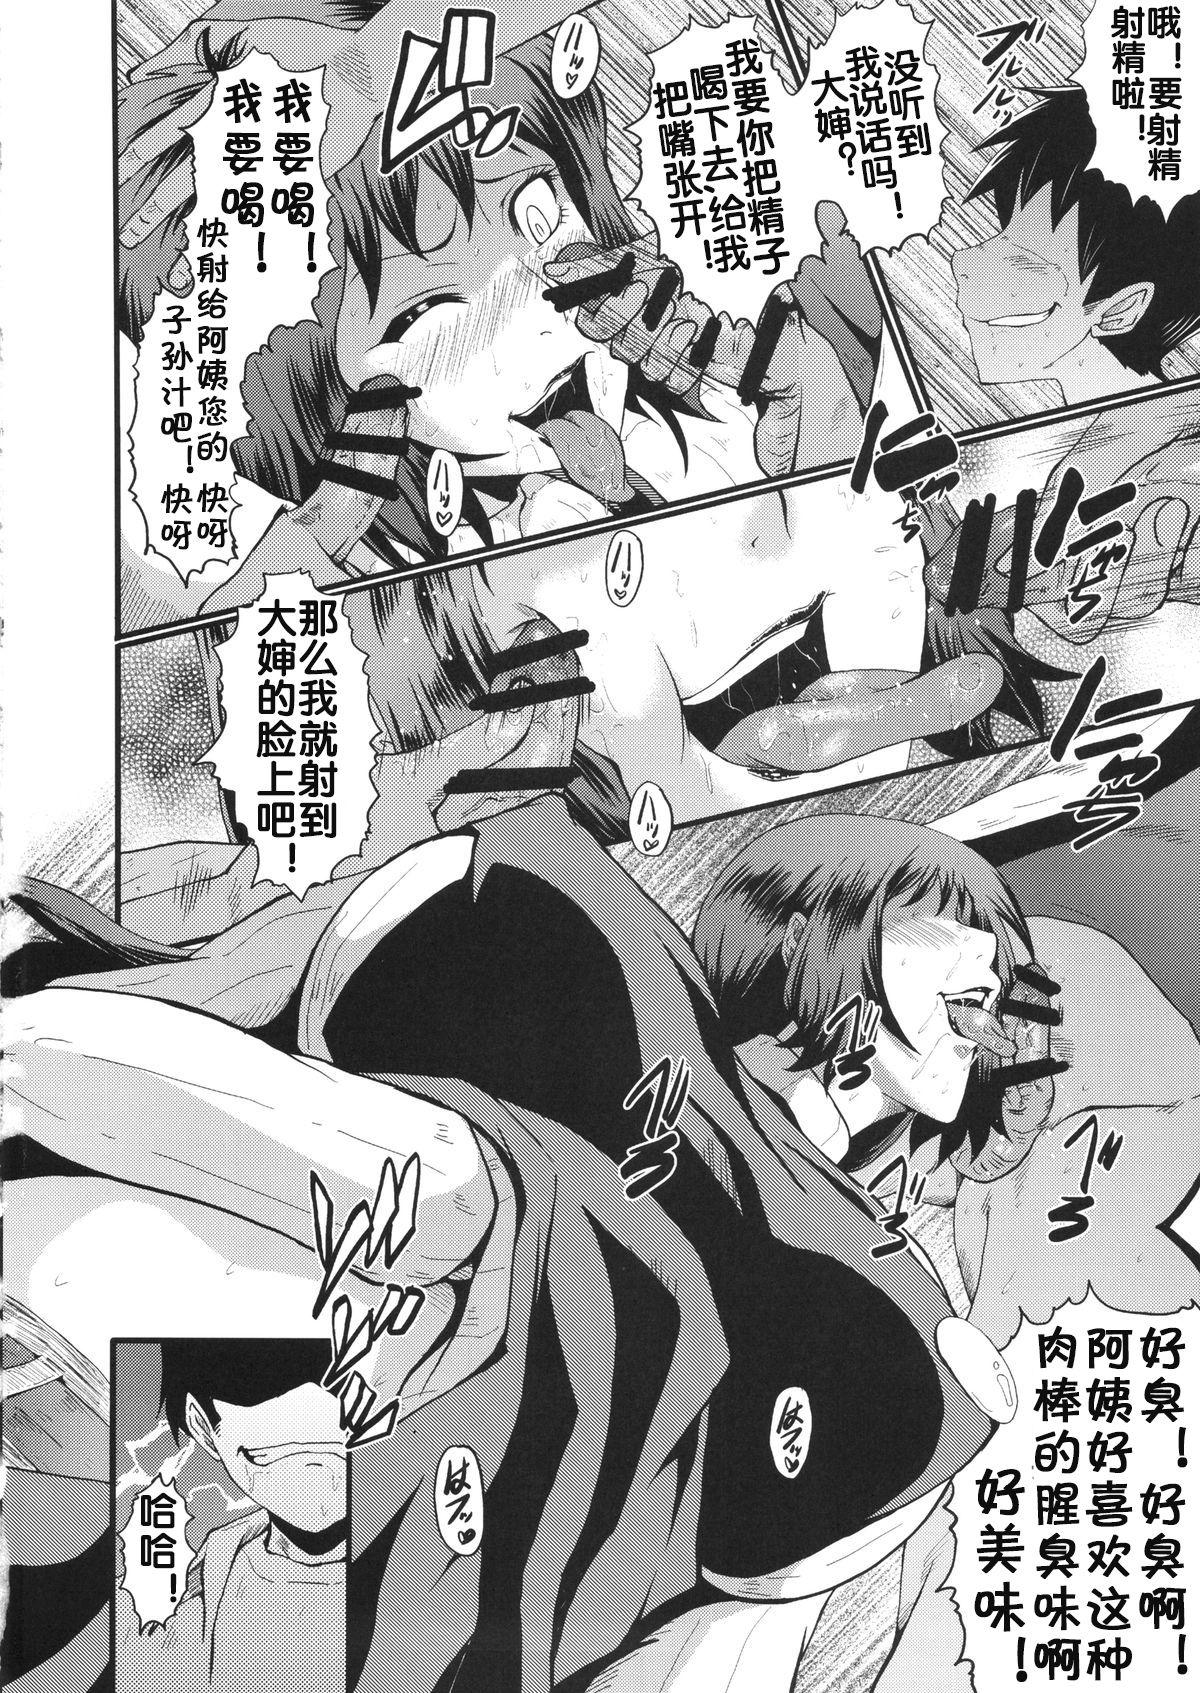 Gapes Gaping Asshole Urabambi Vol. 49 Kaa-san wa Boku ga Shiranai Uchi ni Omanko ni DoHamari shite mashita. - Gundam build fighters Bhabi - Page 9